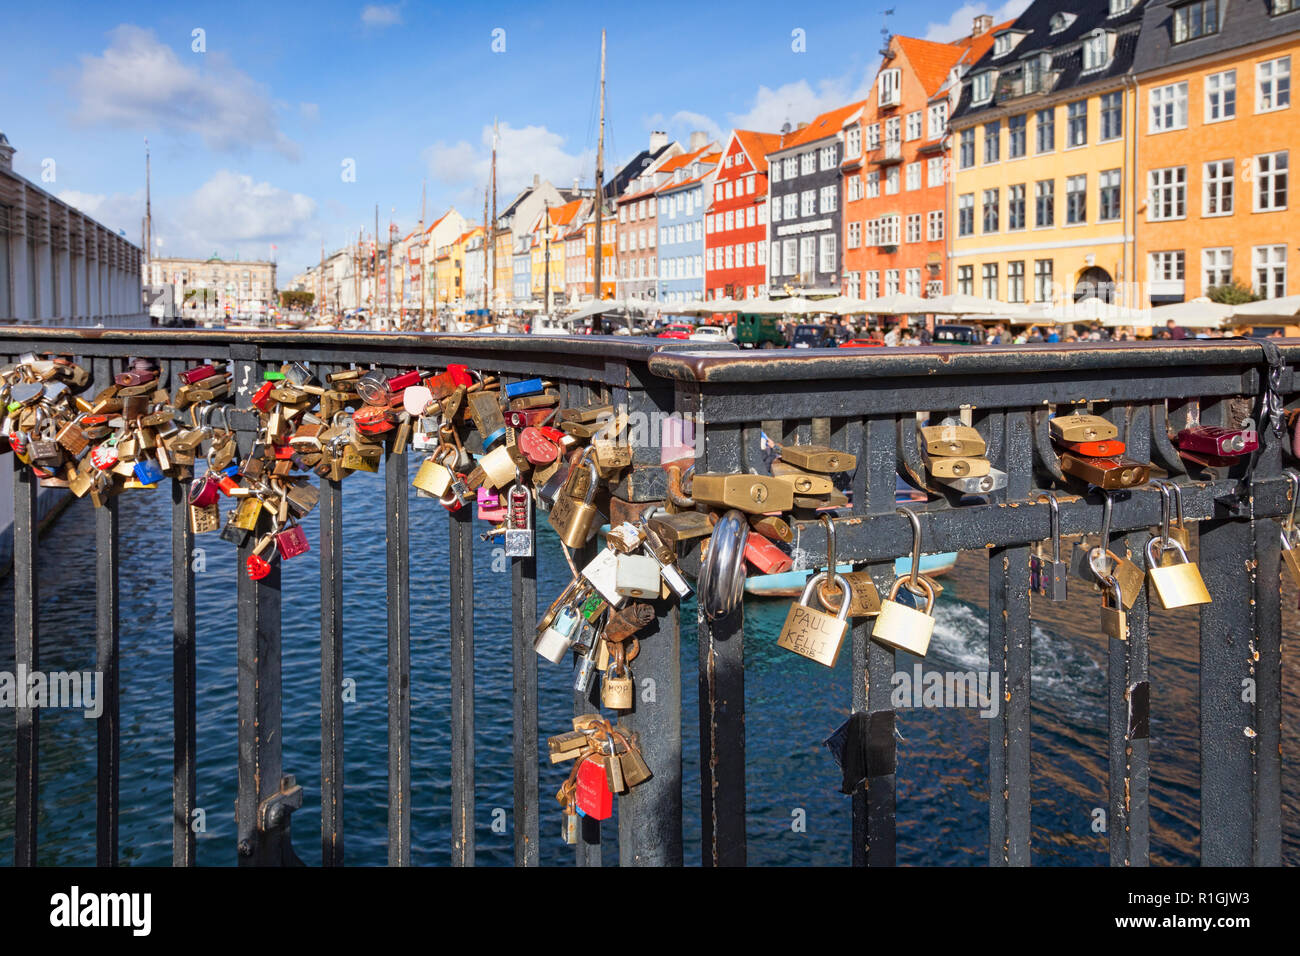 23 Septembre 2018 : Copenhague, Danemark - cadenas ou serrures de l'amour sur un pont du canal Nyhavn, sur une journée ensoleillée d'automne. Banque D'Images